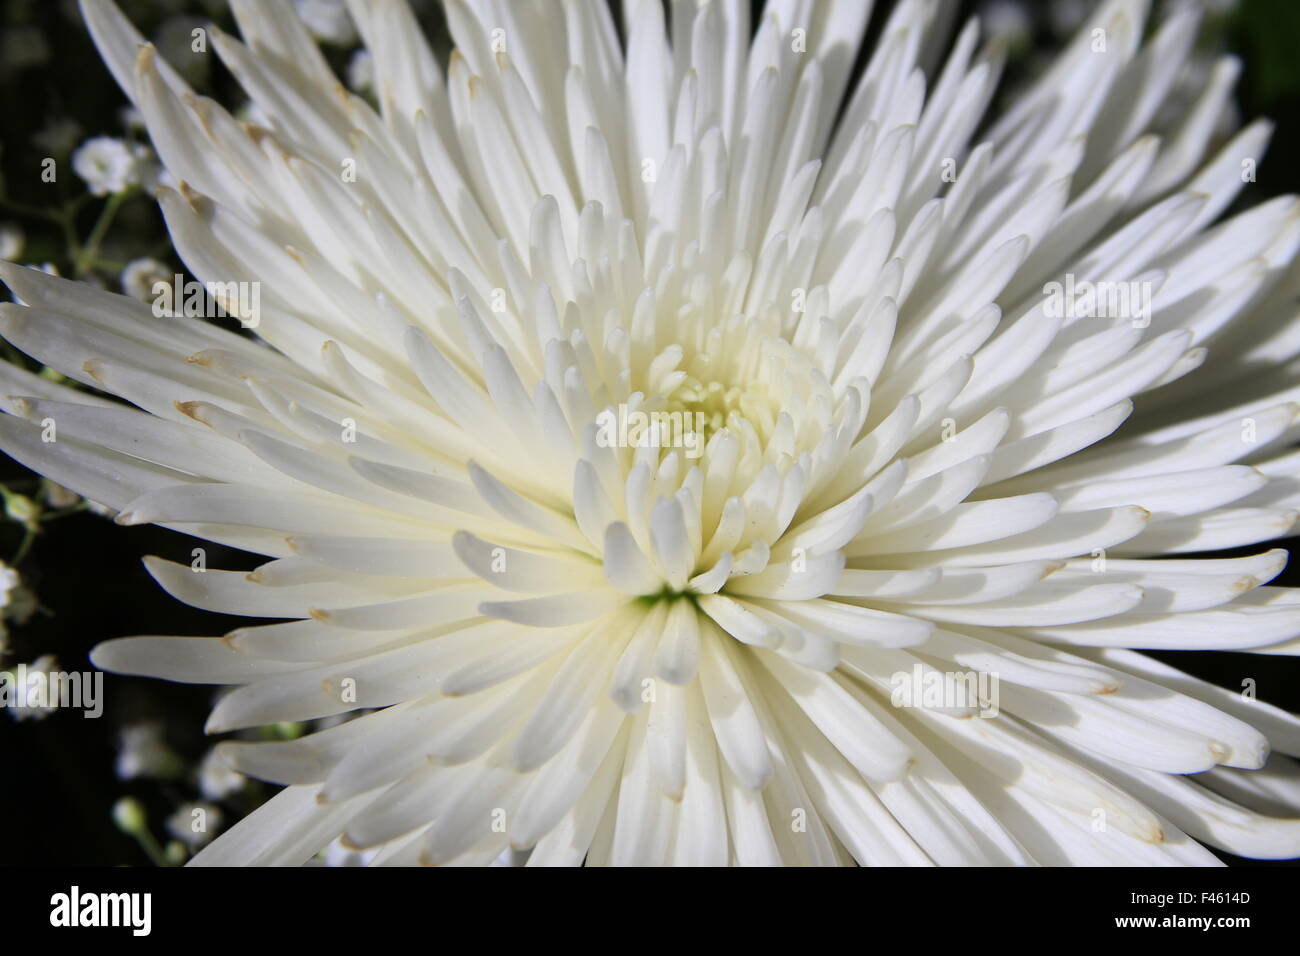 Beautiful white spider mum flower macro photography Stock Photo